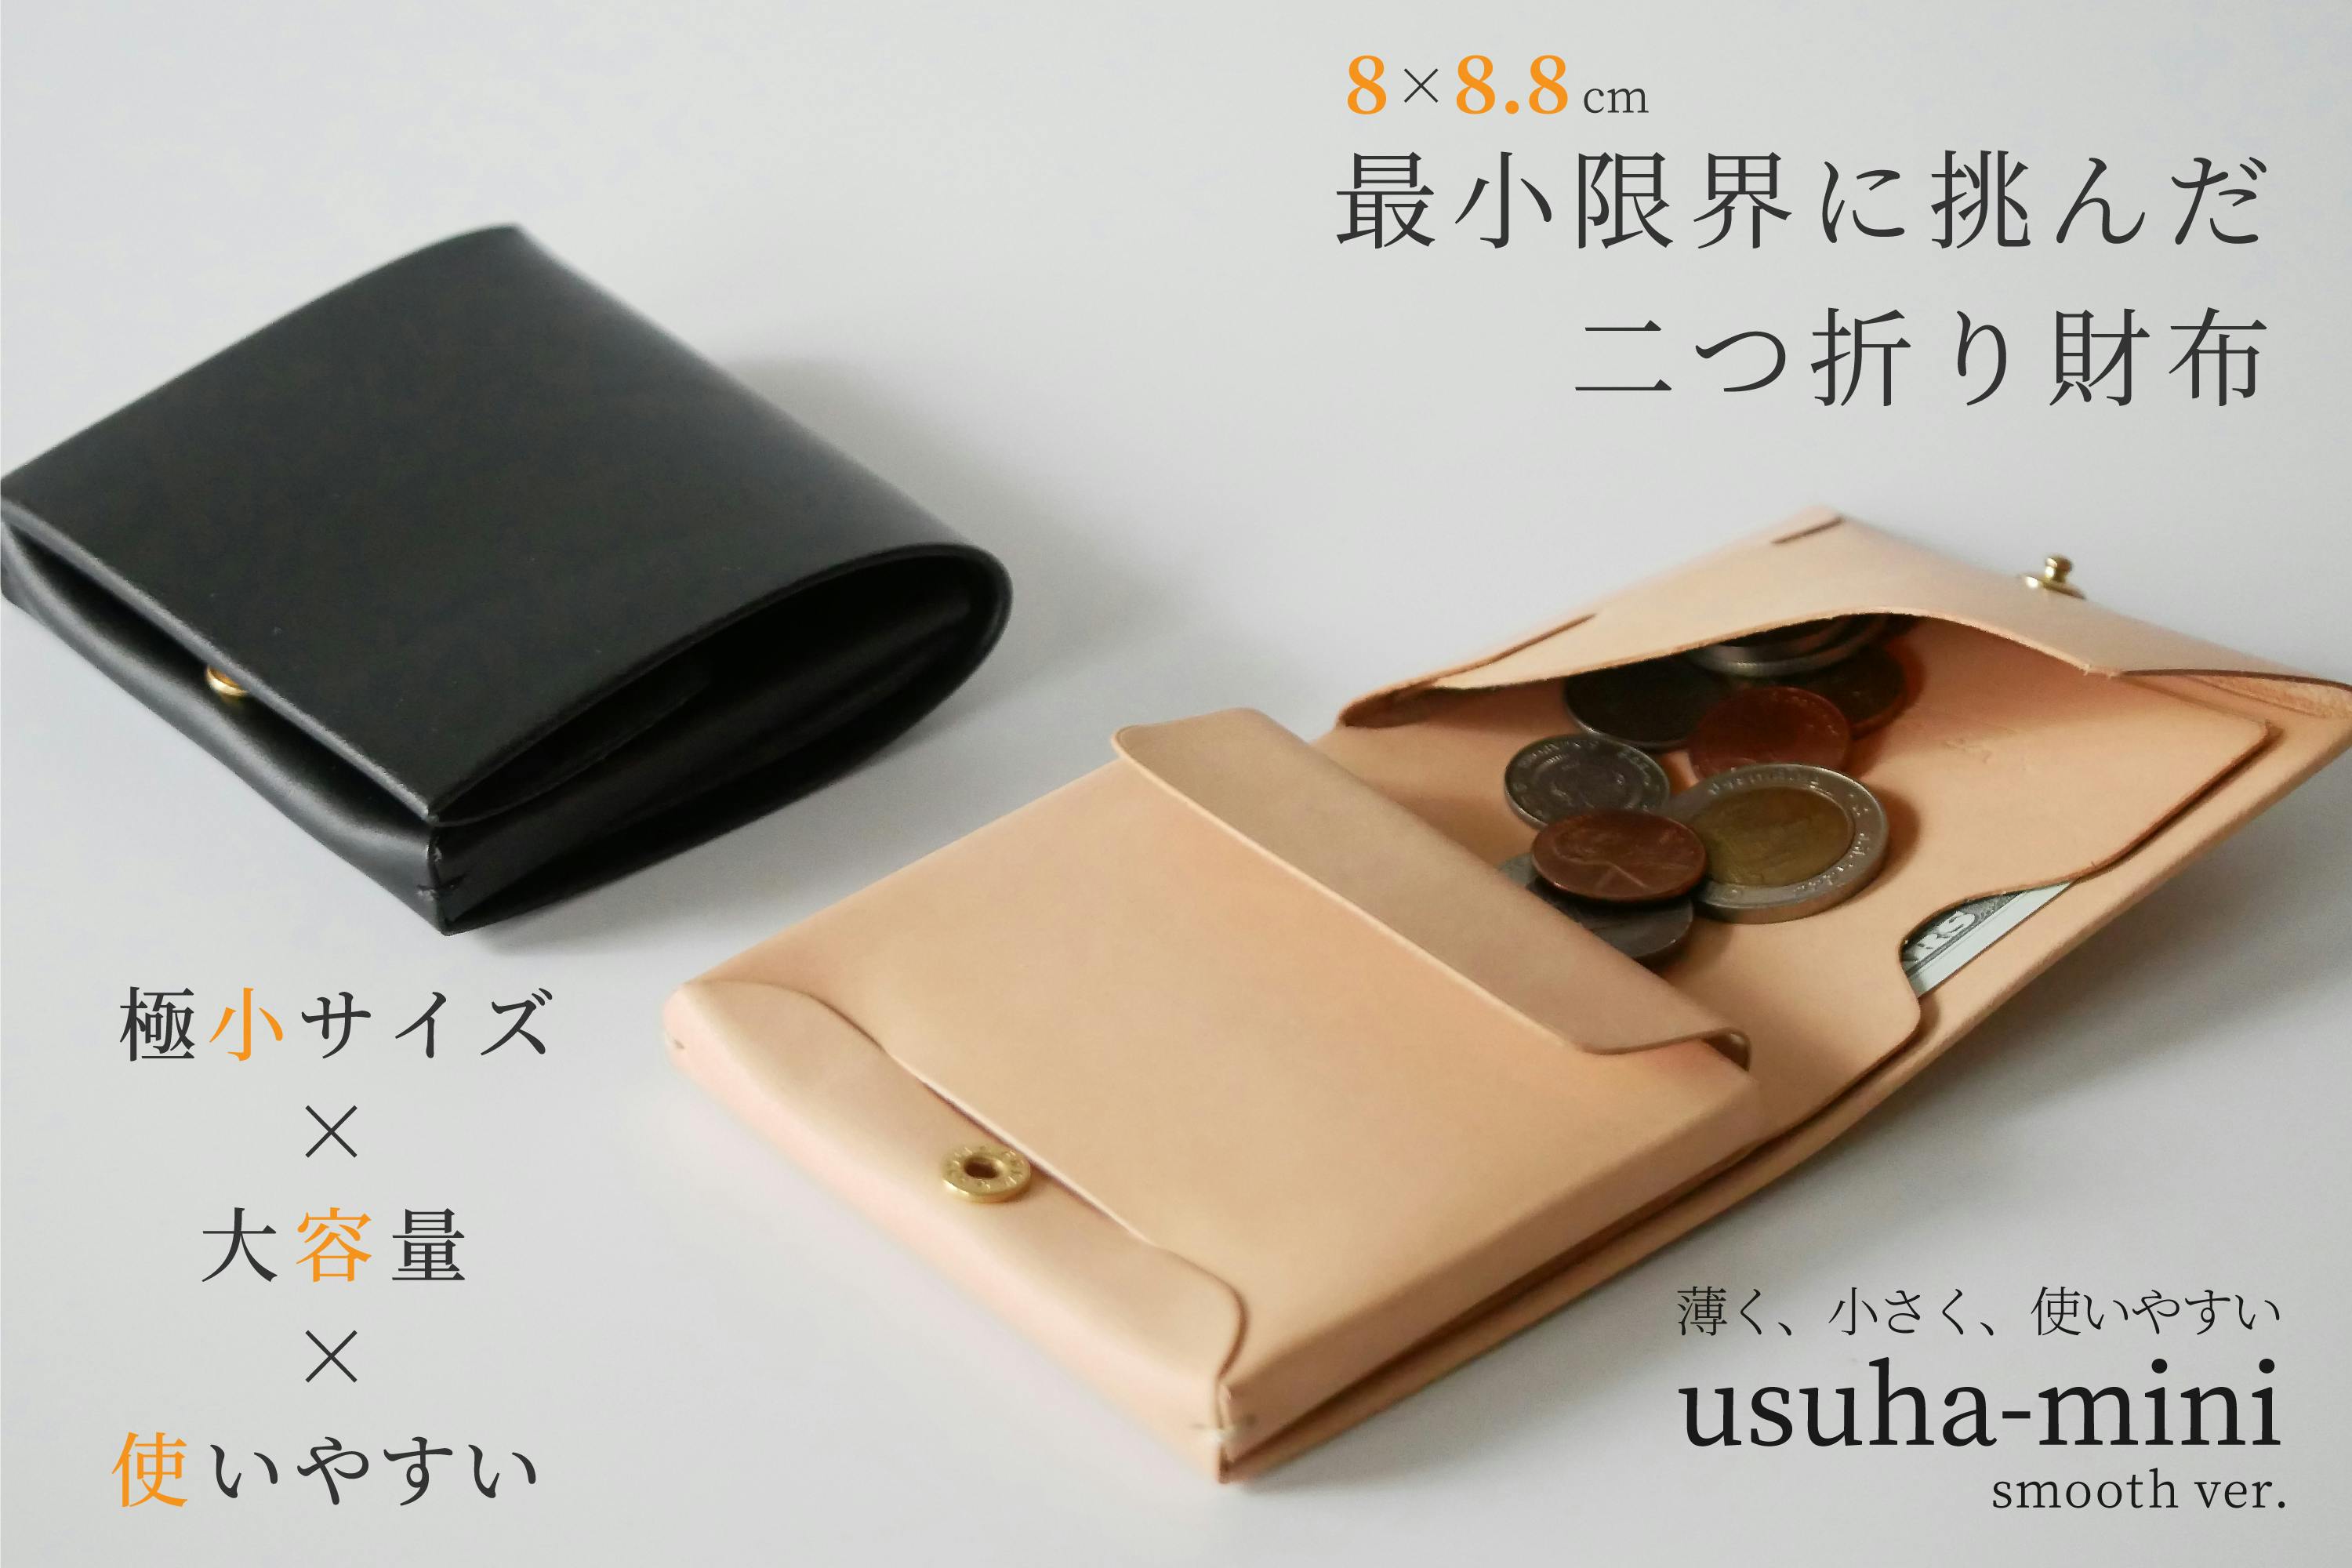 ウスハ-ミニ 国内最少 二つ折り財布 usuha-mini - 折り財布